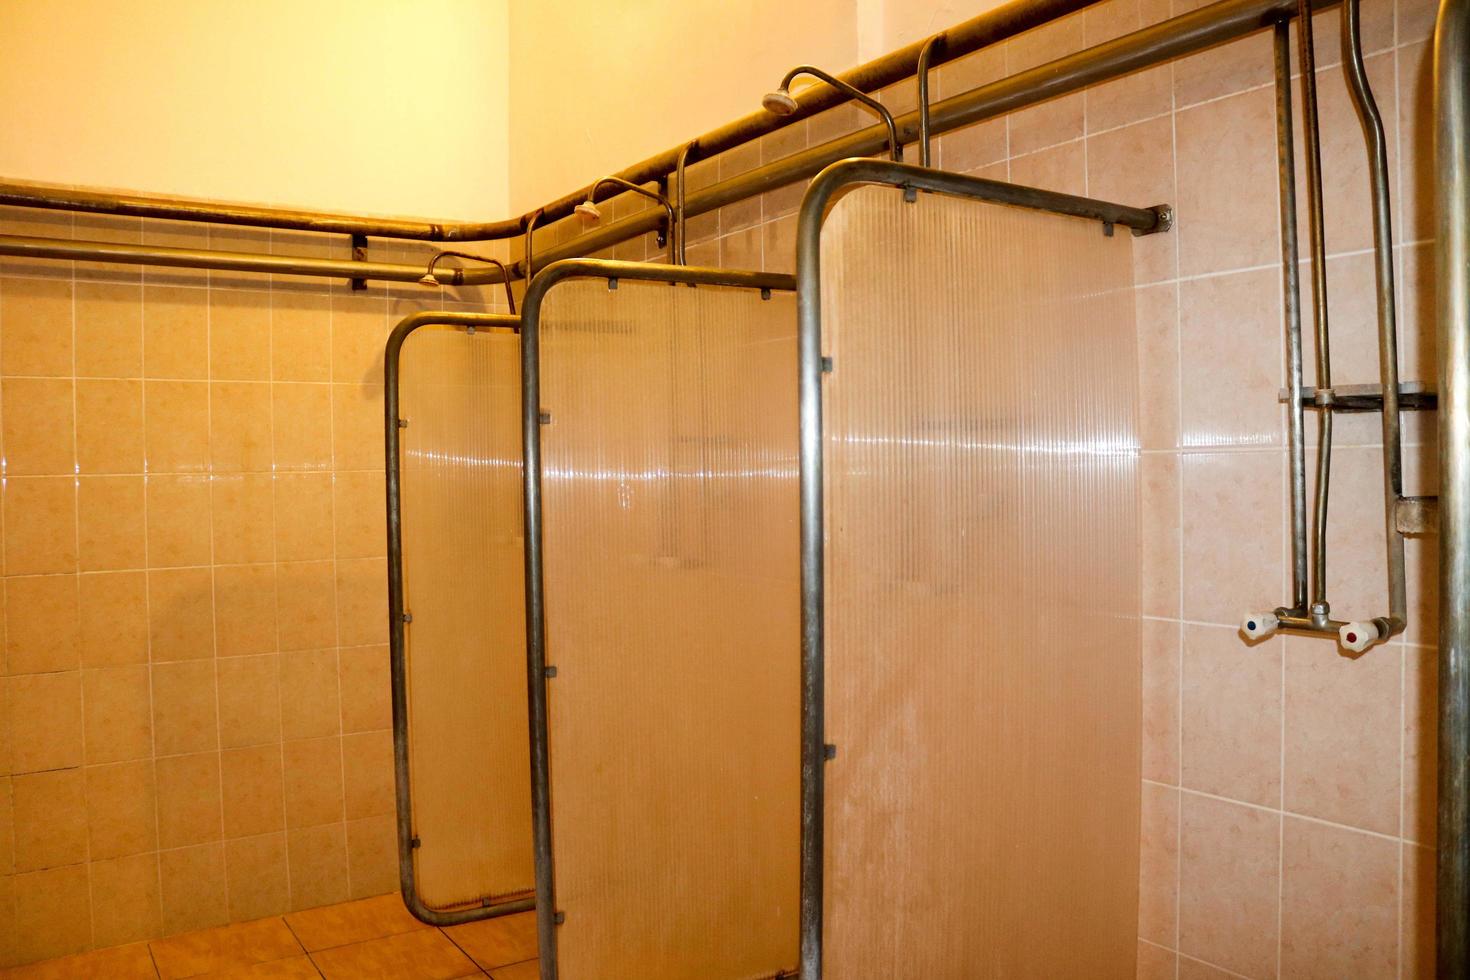 cabinas de ducha en los vestuarios de los trabajadores de la planta industrial foto